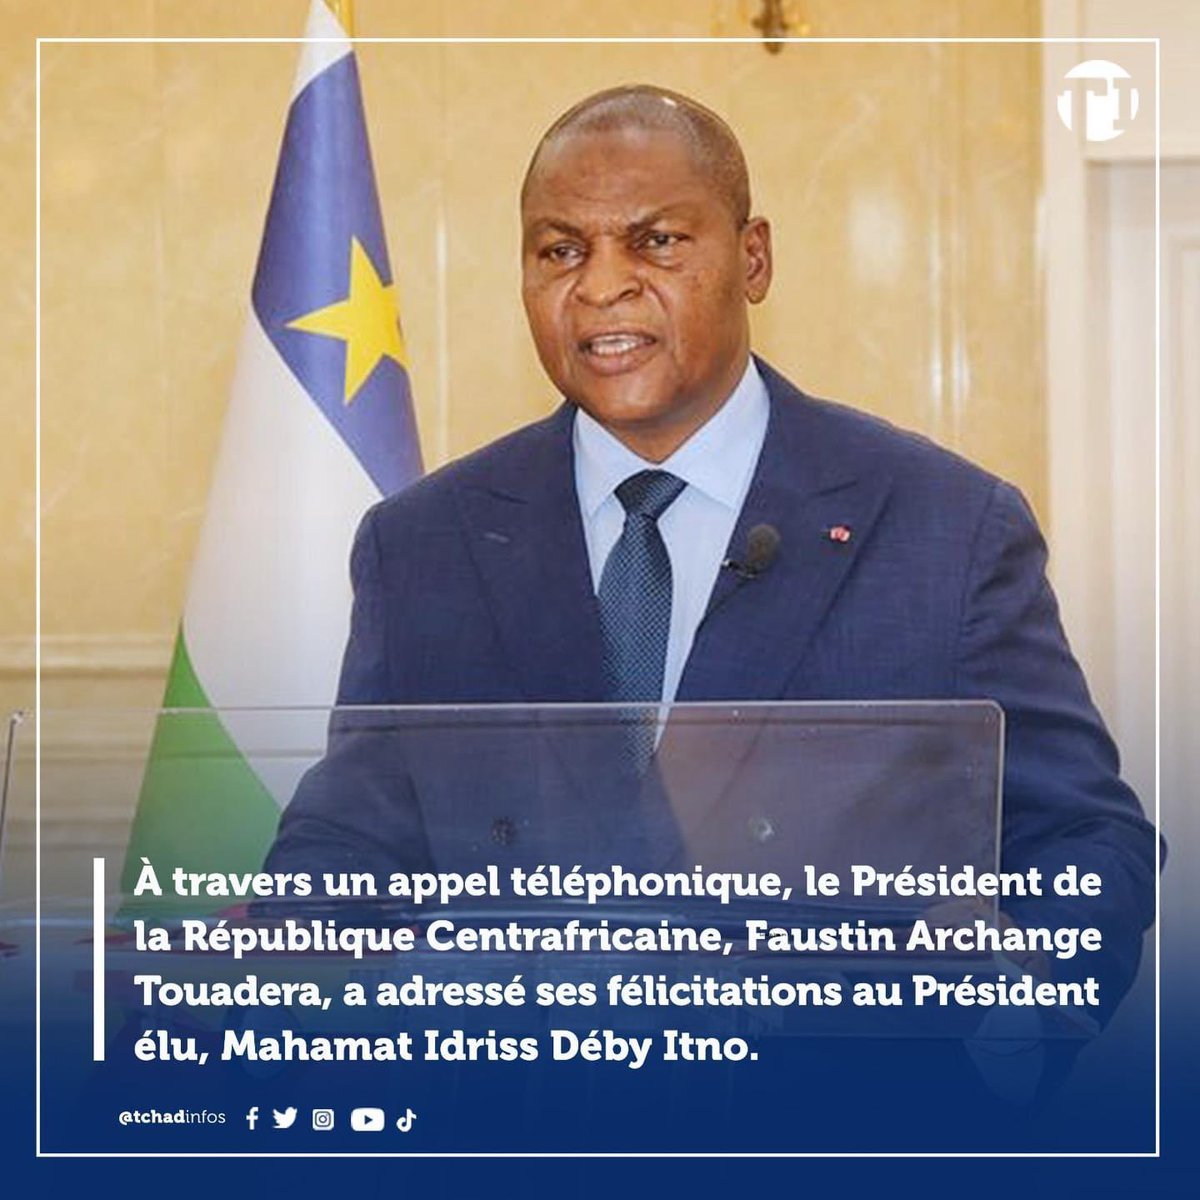 Le Président de la République Centrafricaine 🇨🇫 , Faustin Archange Touadera, a adressé ses félicitations au Président élu, Mahamat Idriss Déby Itno à travers un appel téléphonique 📞 .#Tchad #RCA